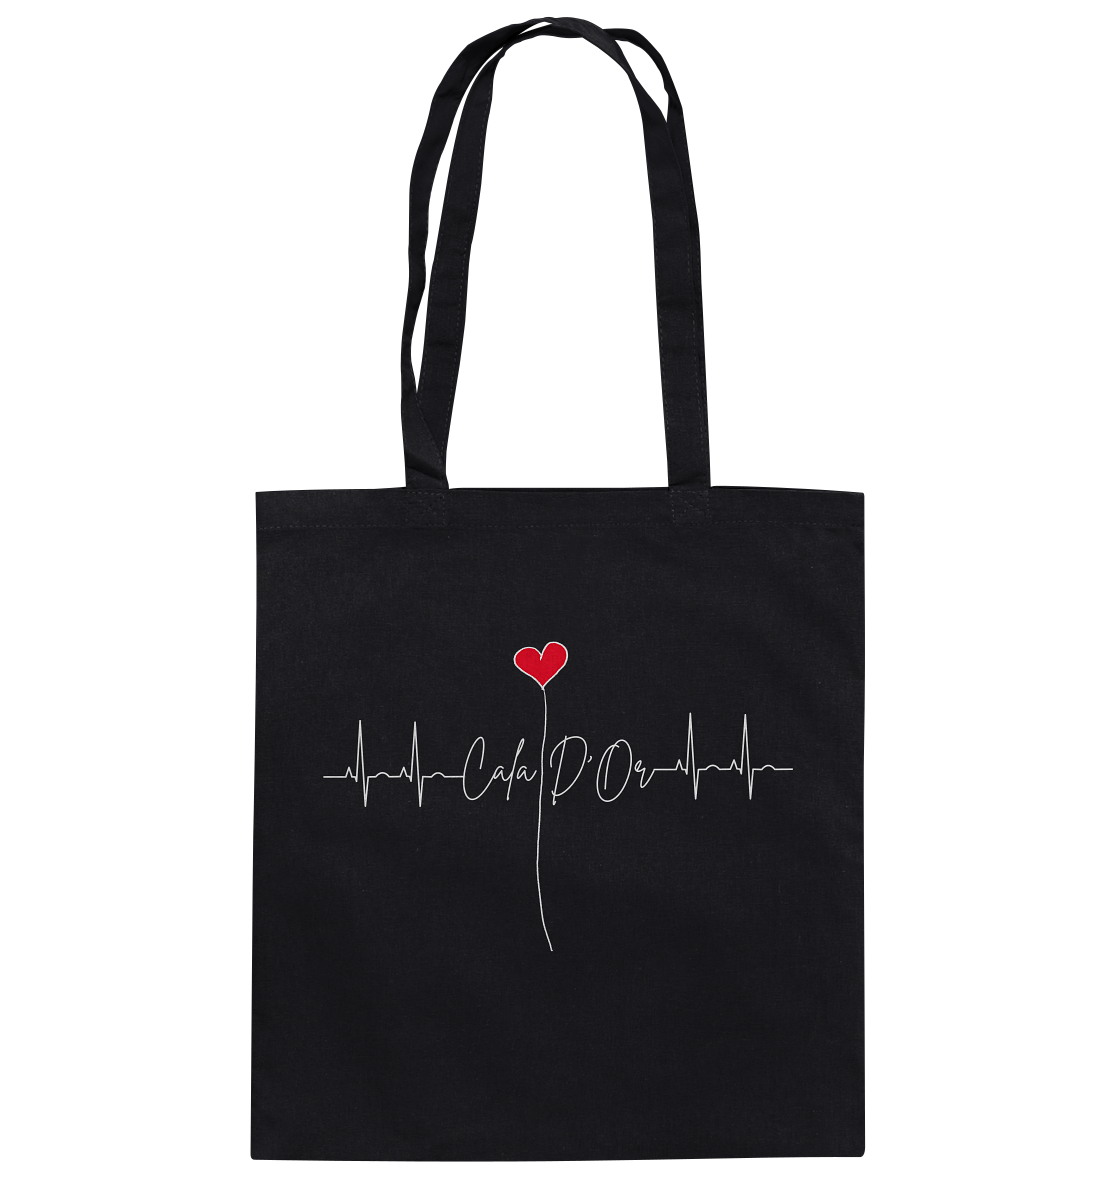 Schwarze Baumwolltragetaschen mit weißer Aufschrift Cala D'Or und einem Herz